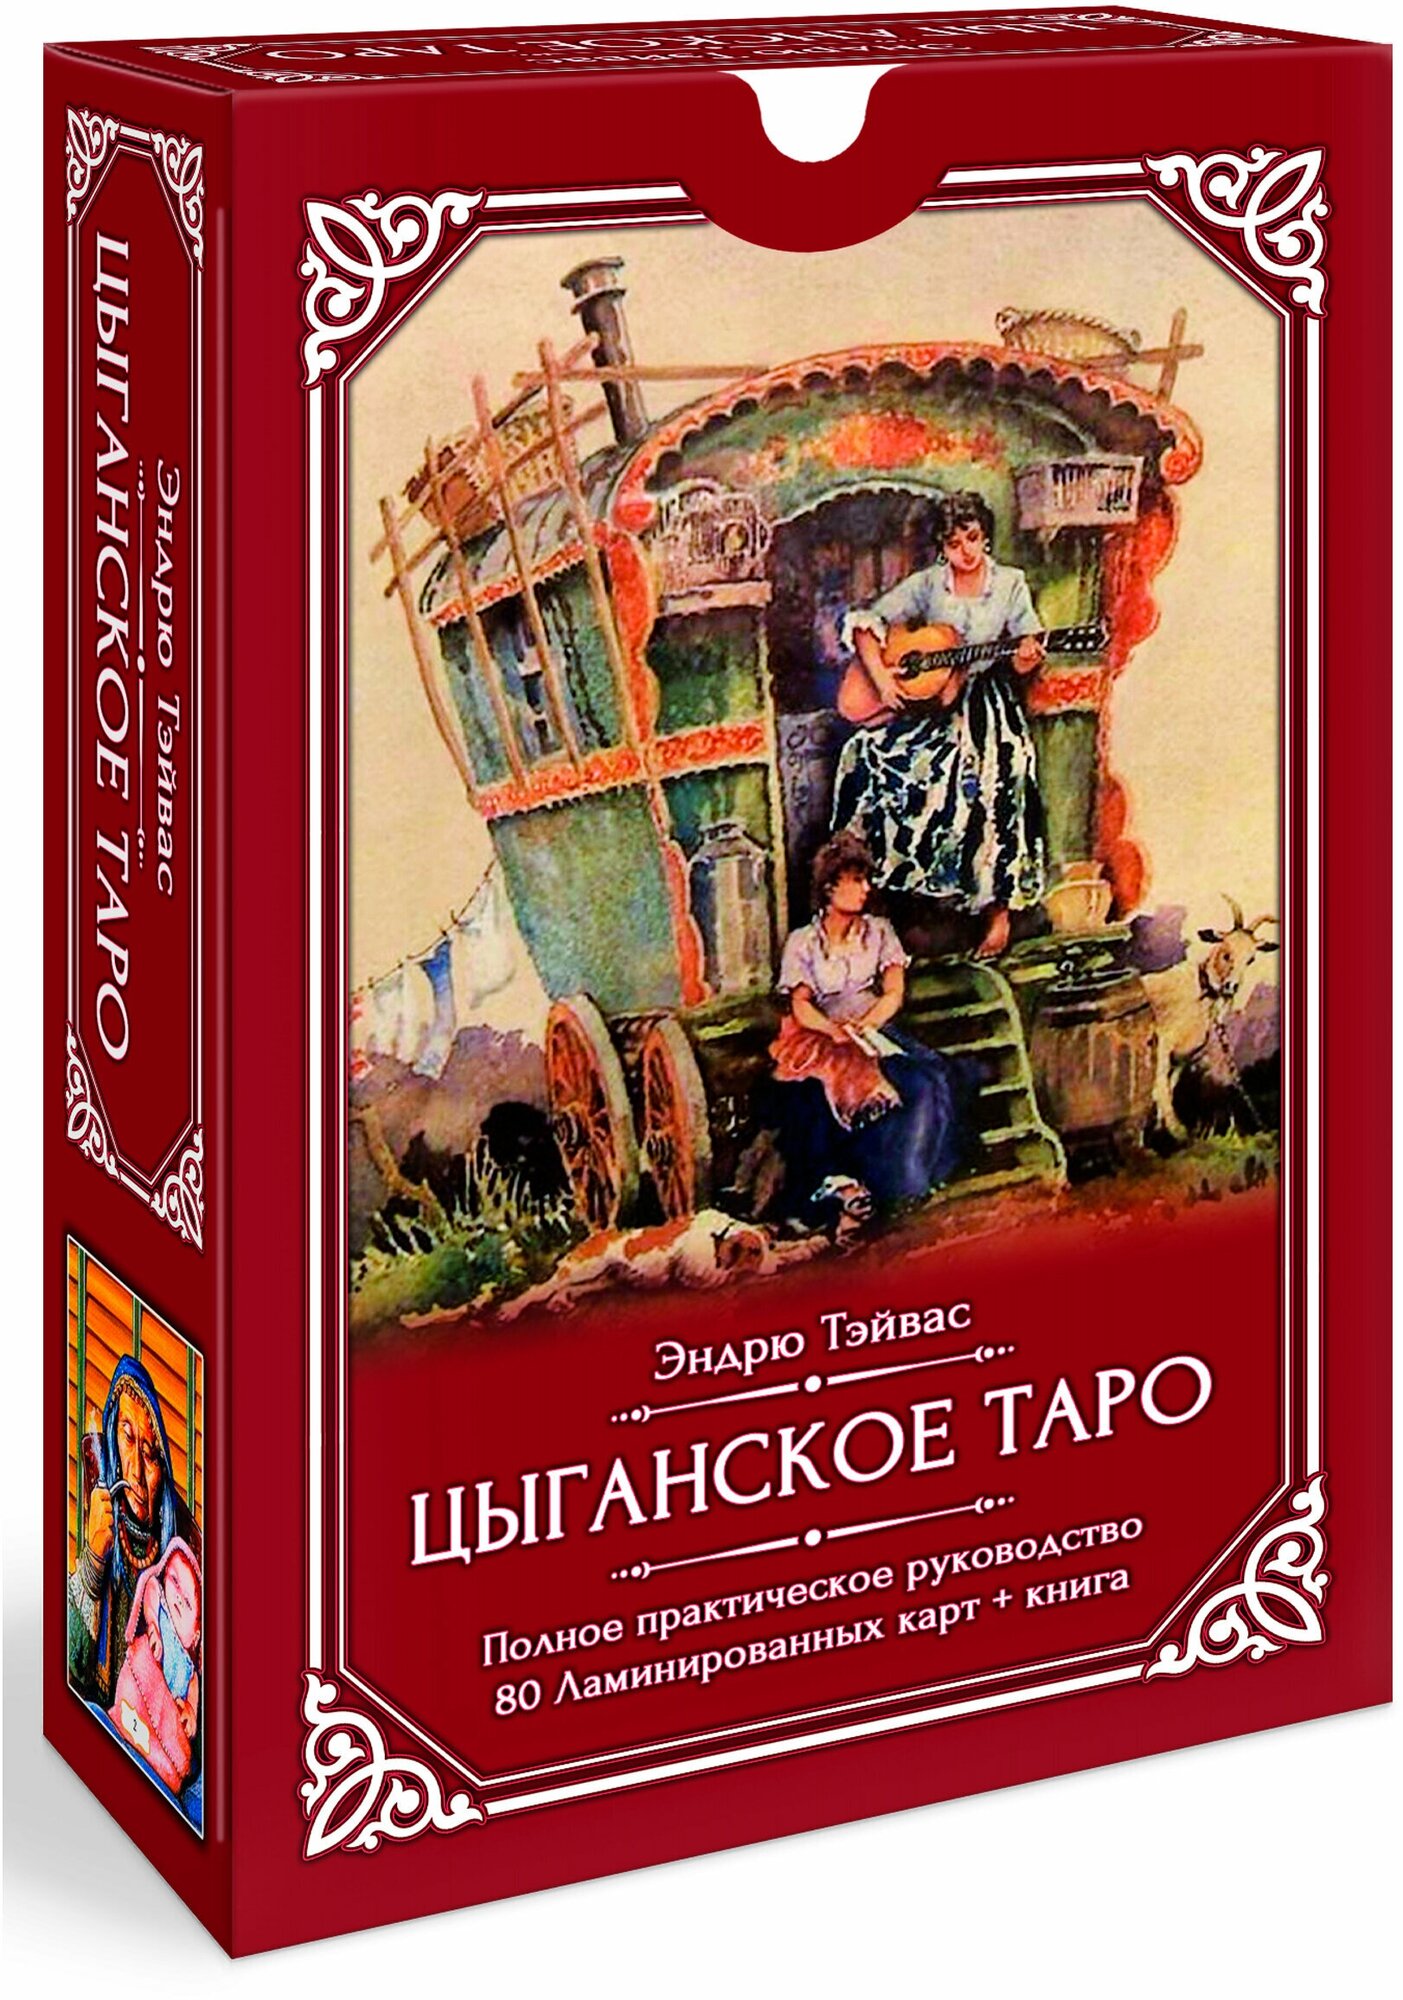 Цыганское Таро (80 ламинированных карт + книга) - фото №1